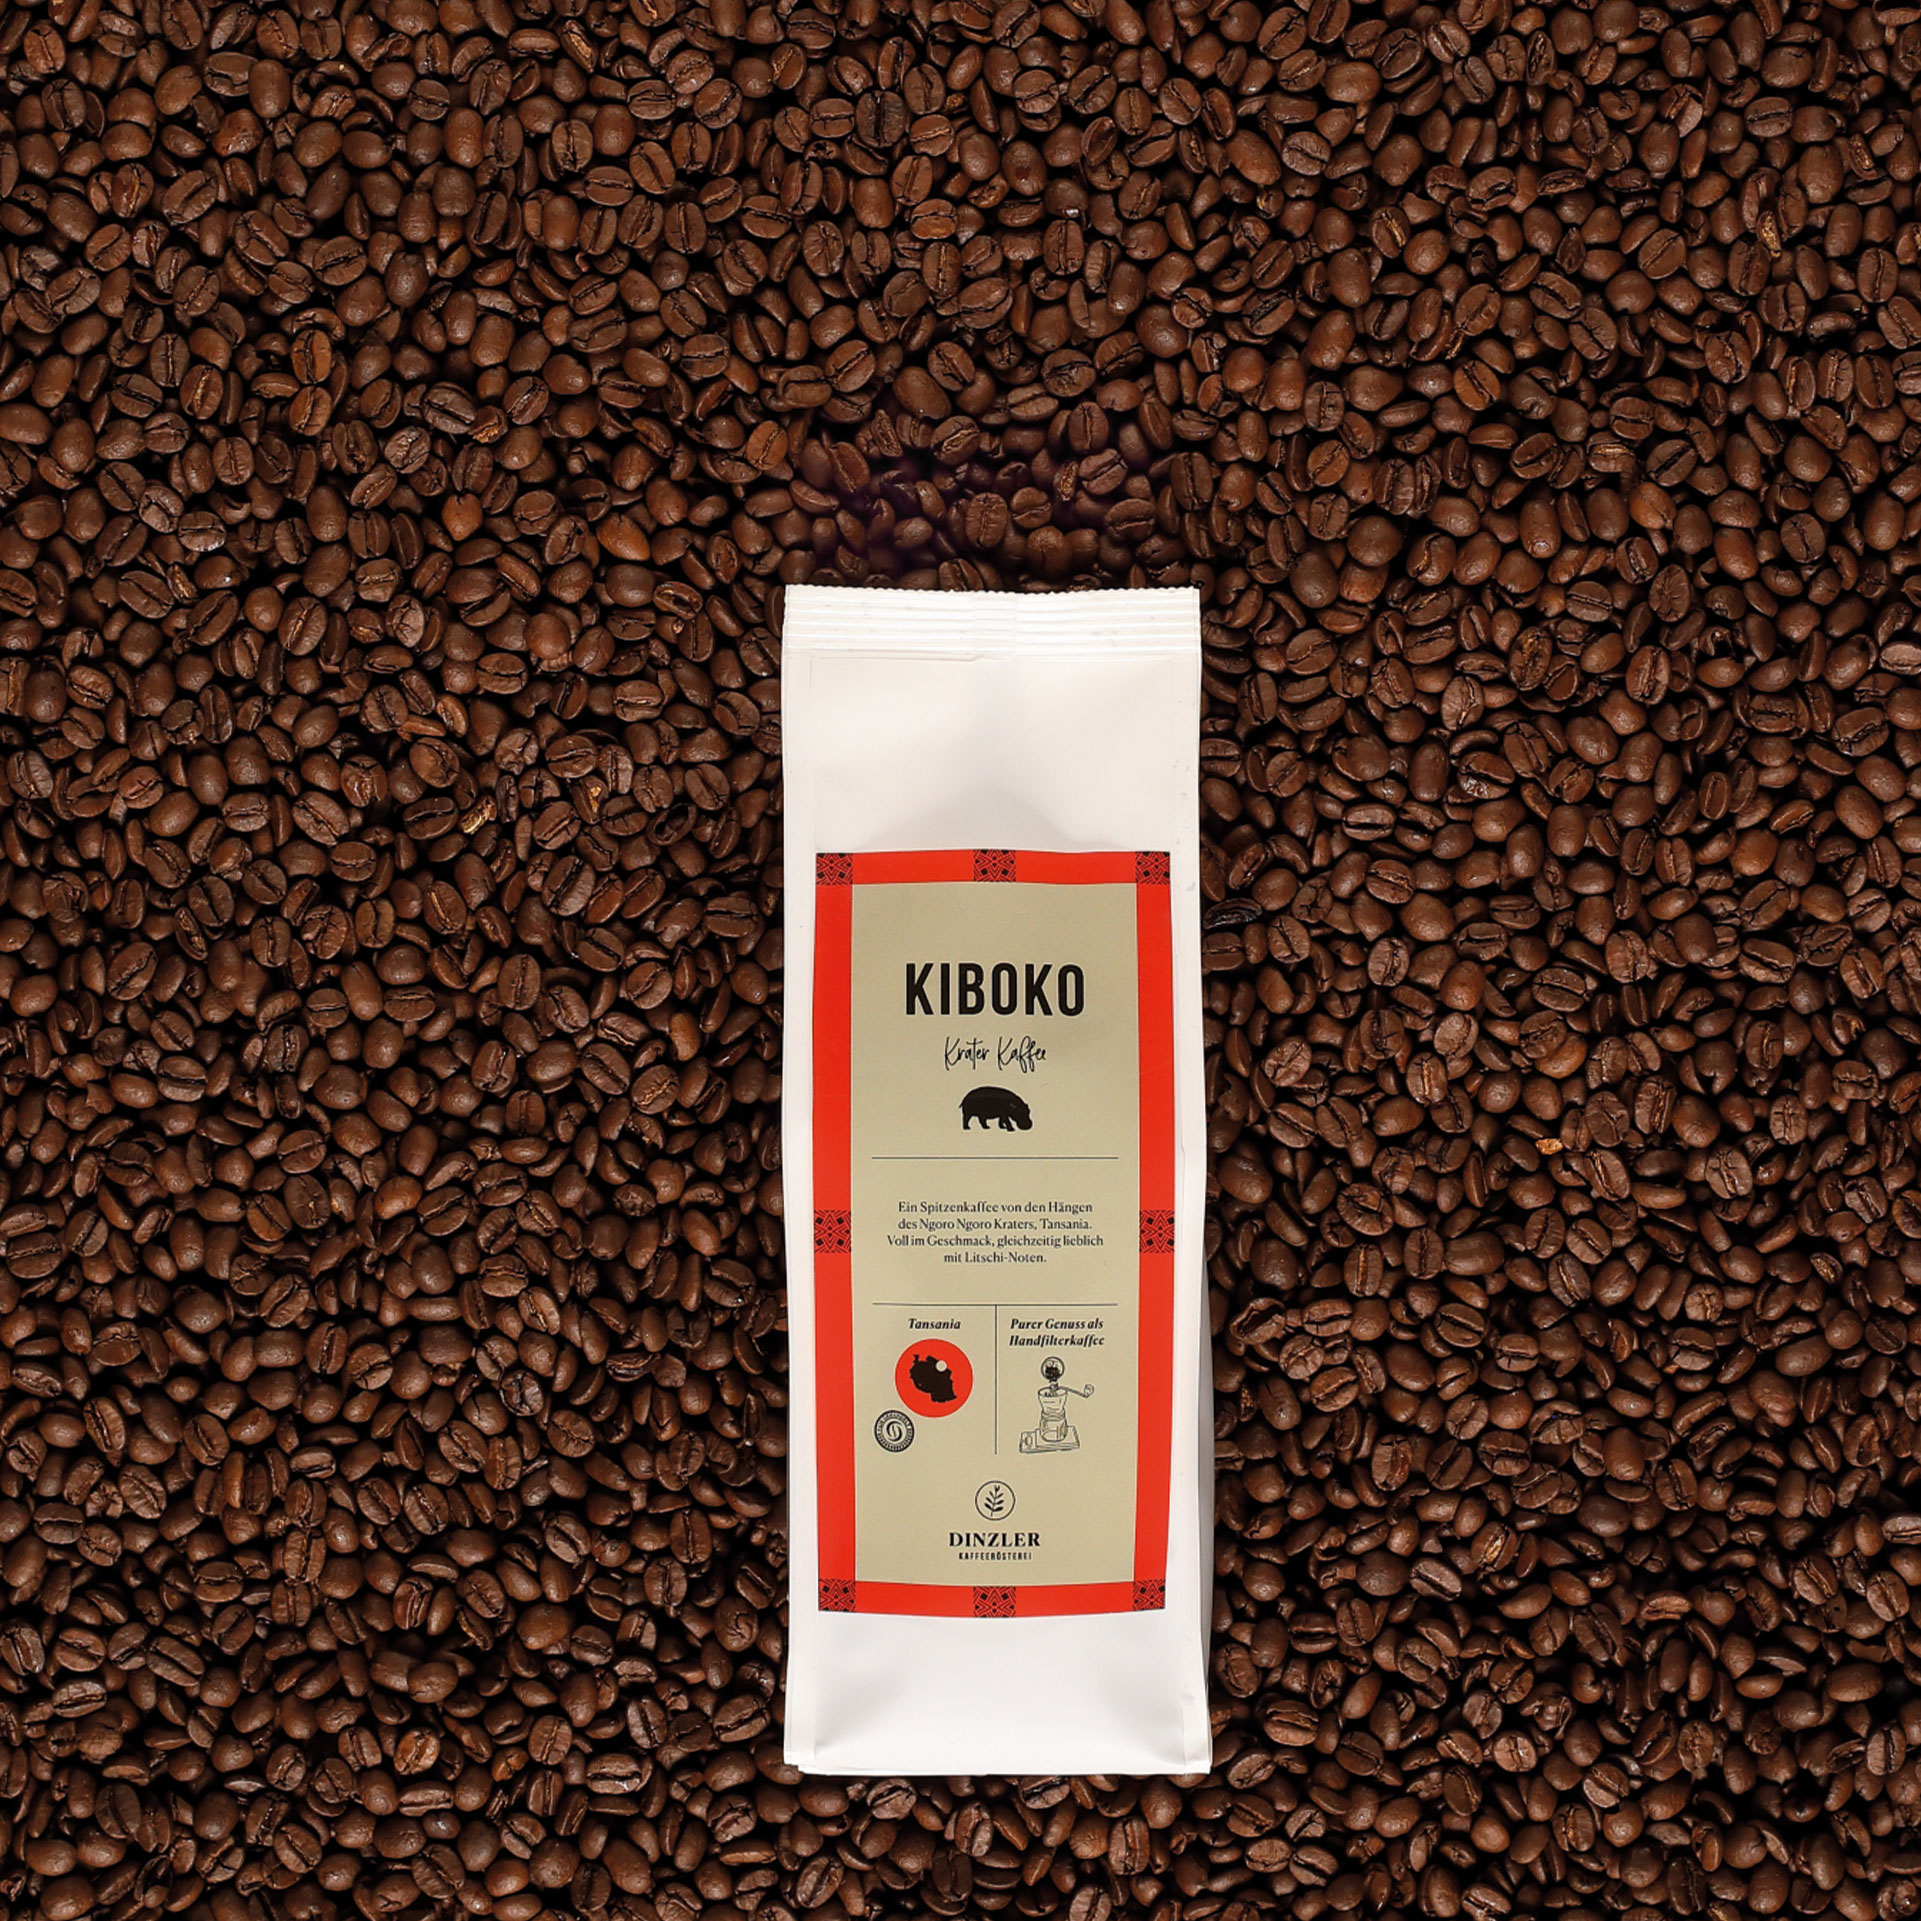 Produktbild DINZLER Kaffee Kiboko| DINZLER Kaffeerösterei